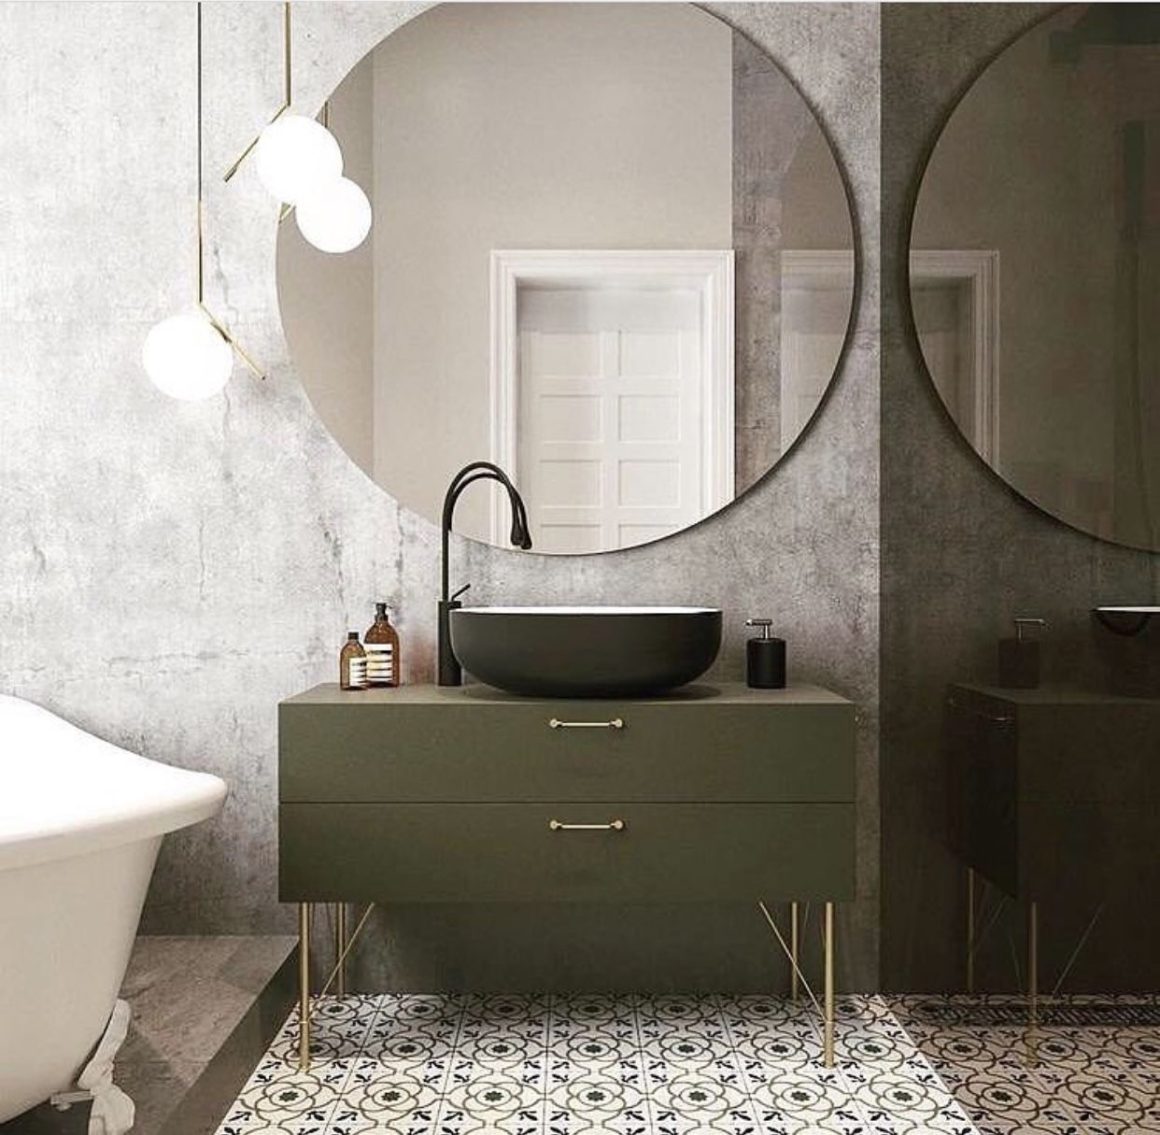 Grand miroir rond dans cette salle de bains de style mid-century, avec un meuble doté de pieds en métal